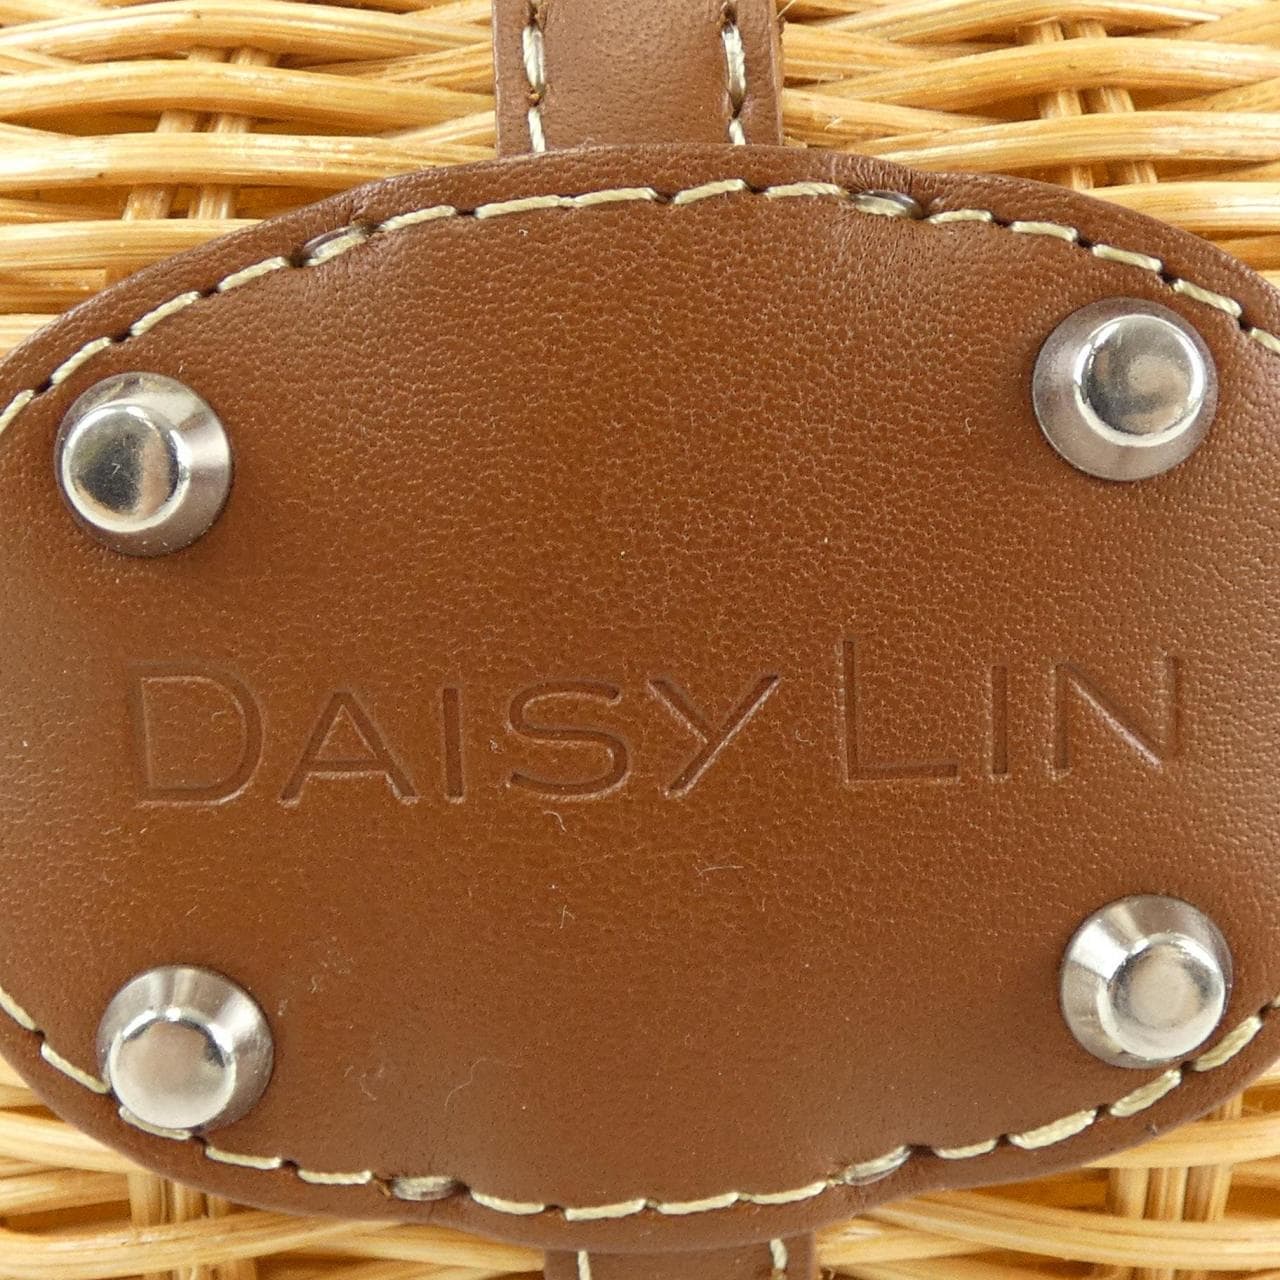 デイジーリン DAISY LIN BAG